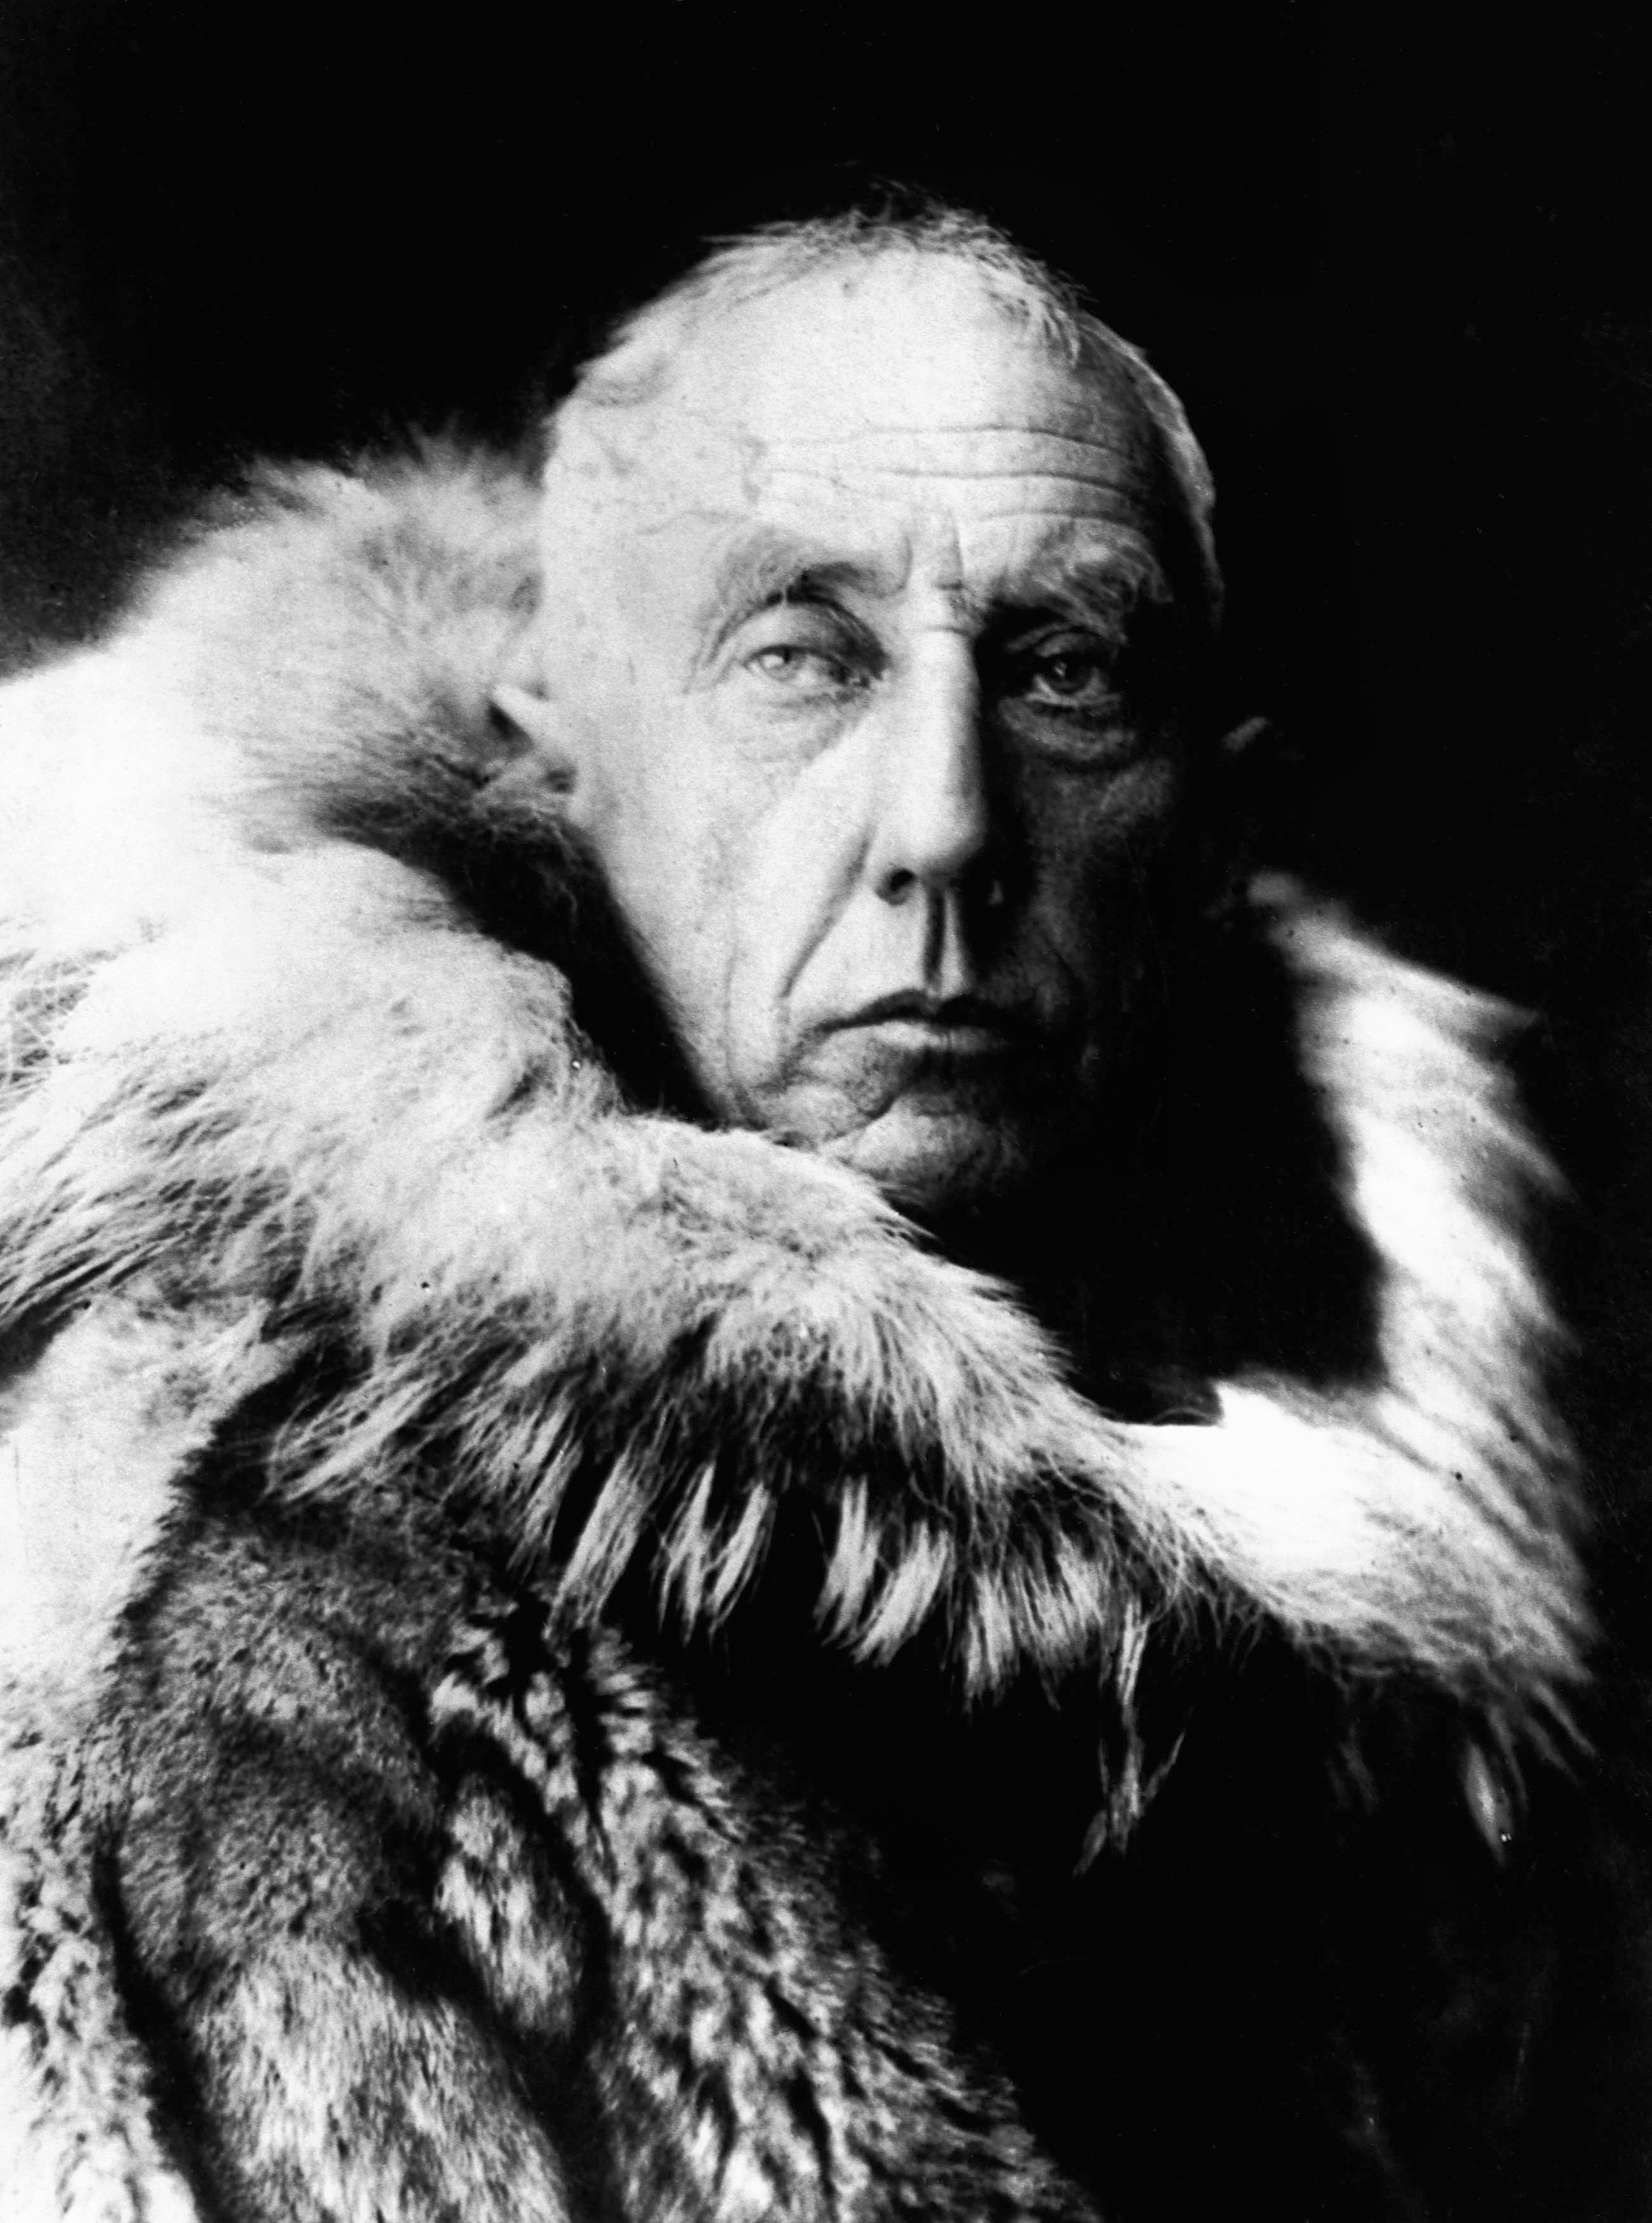  Roald Amundsen نىڭ تەرجىمىھالى